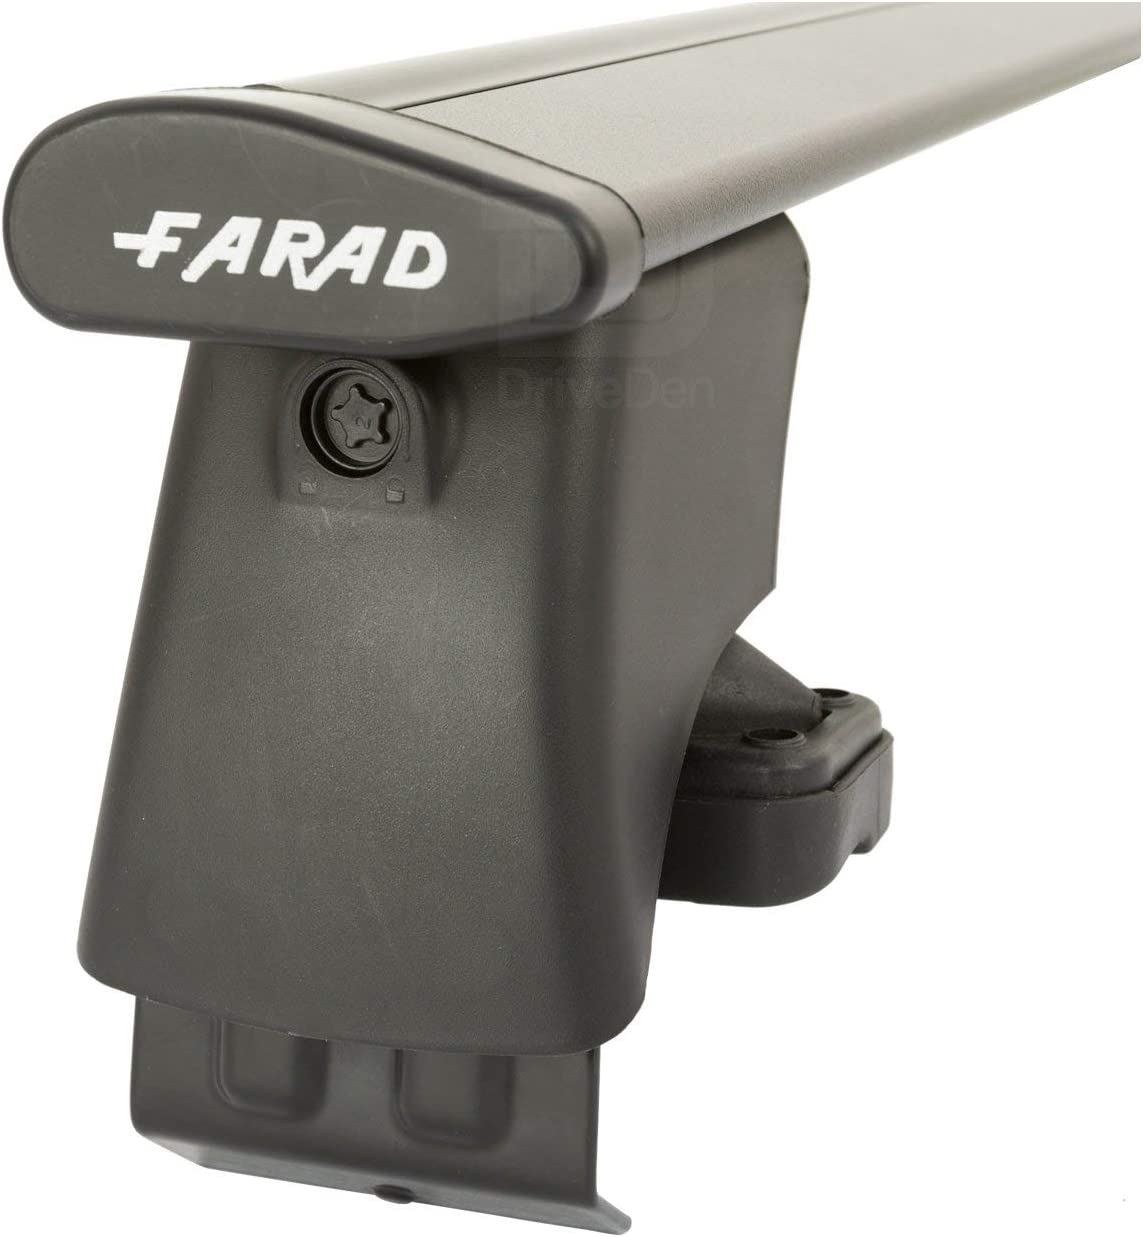 FARAD-Kit H2 per barre portatutto - Audi A6 1997-2003 (senza corrimano)